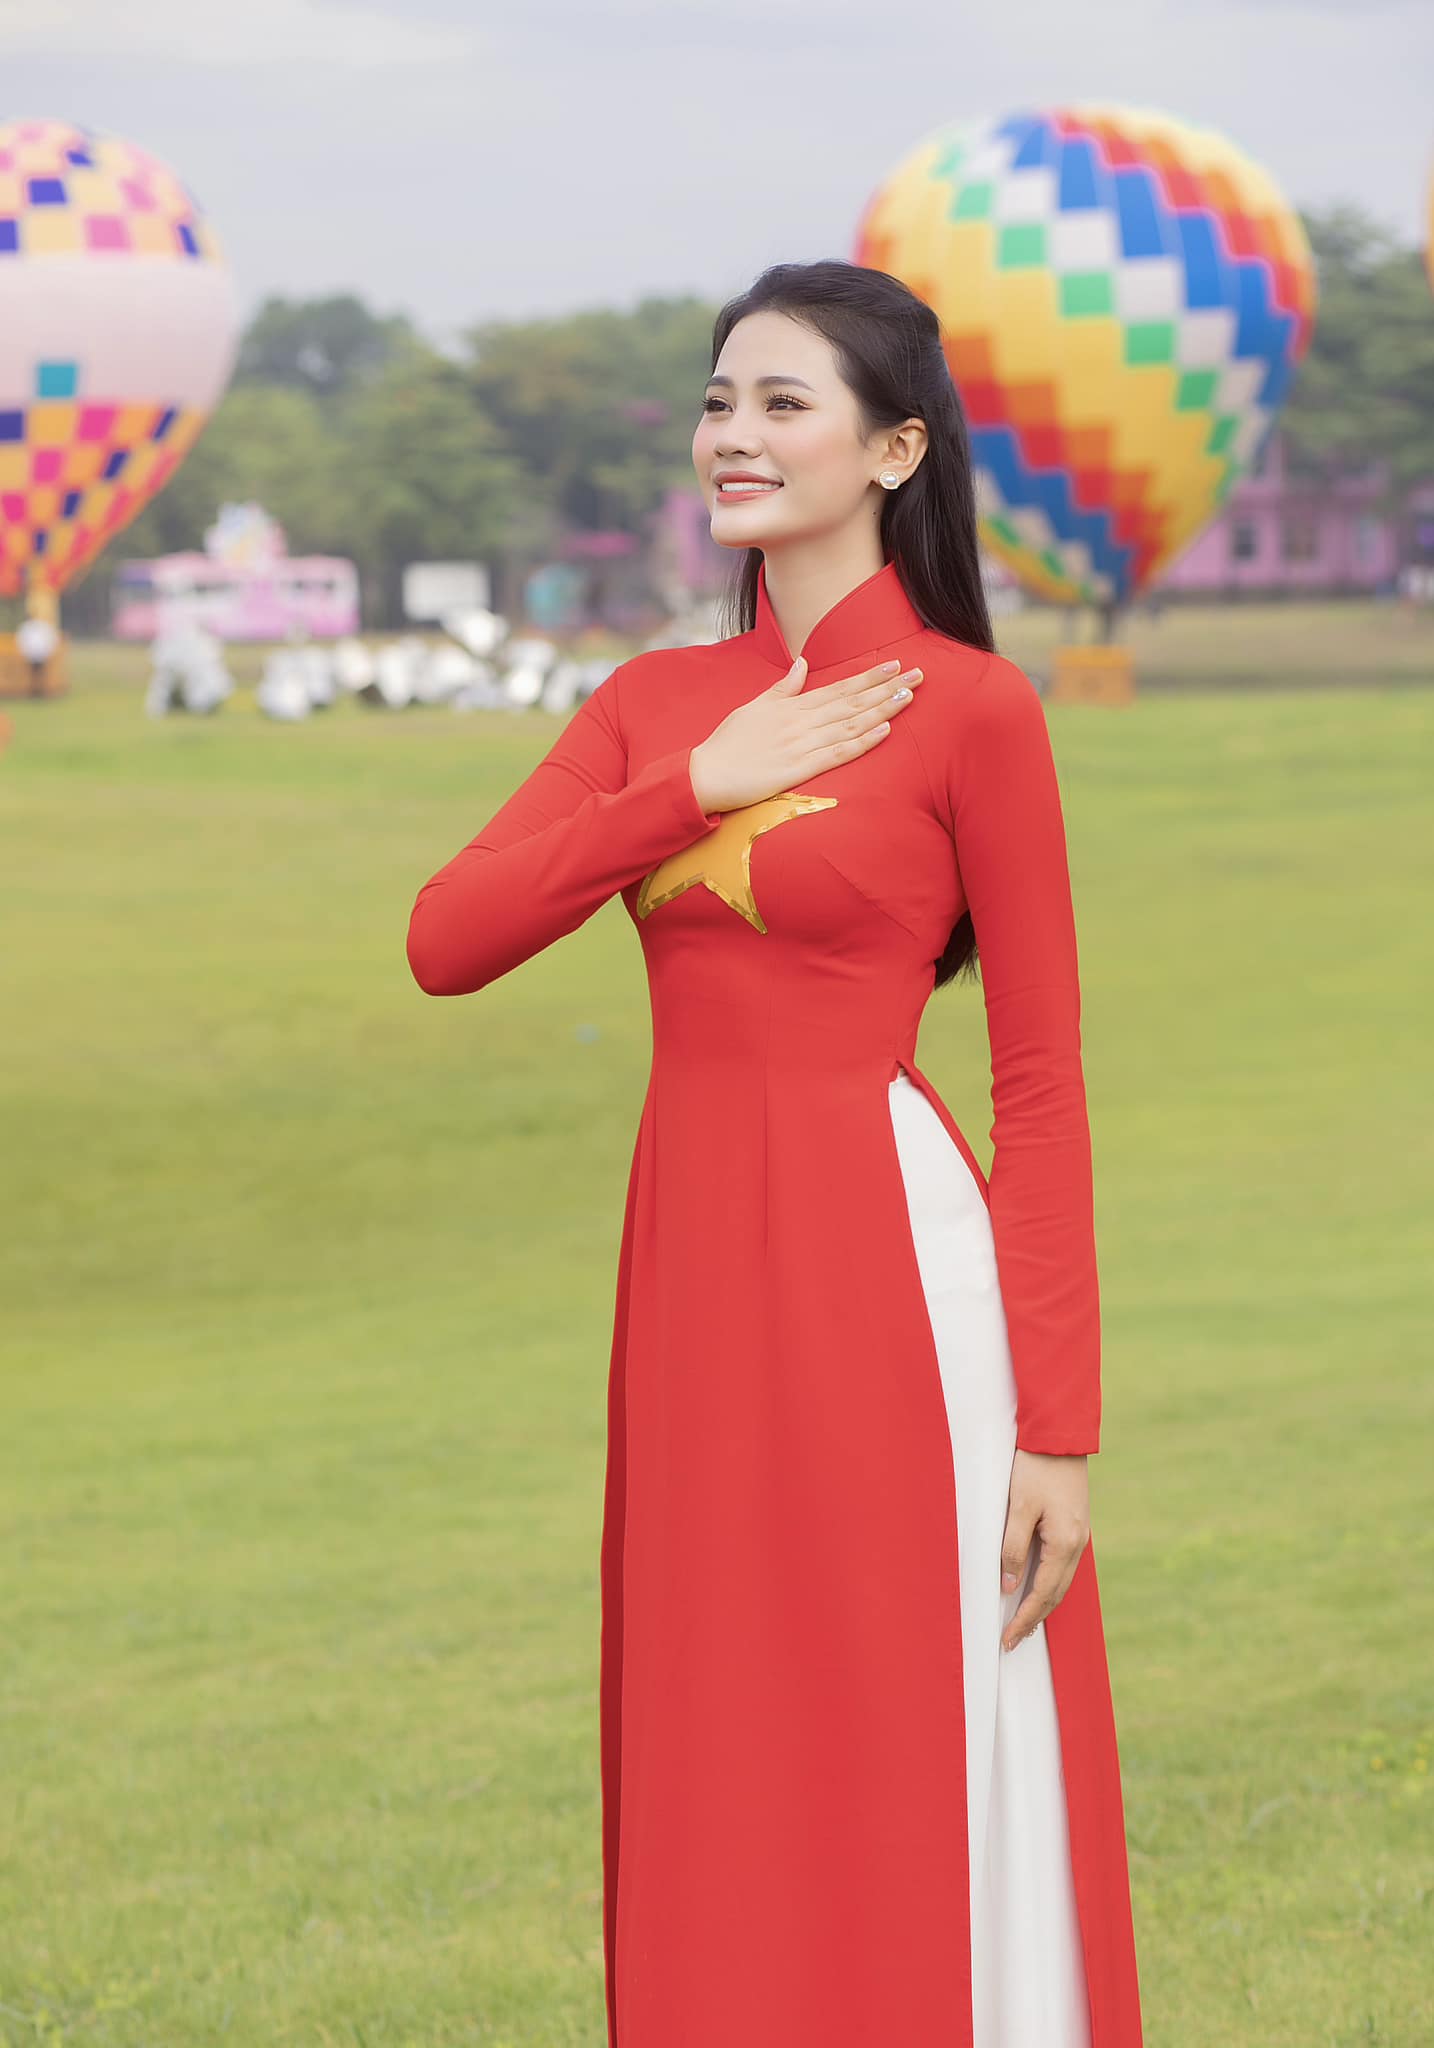 Cuộc sống của Hoa hậu duy nhất tại Việt Nam trả lại vương miện 4 tỷ đồng hiện ra sao? - ảnh 2